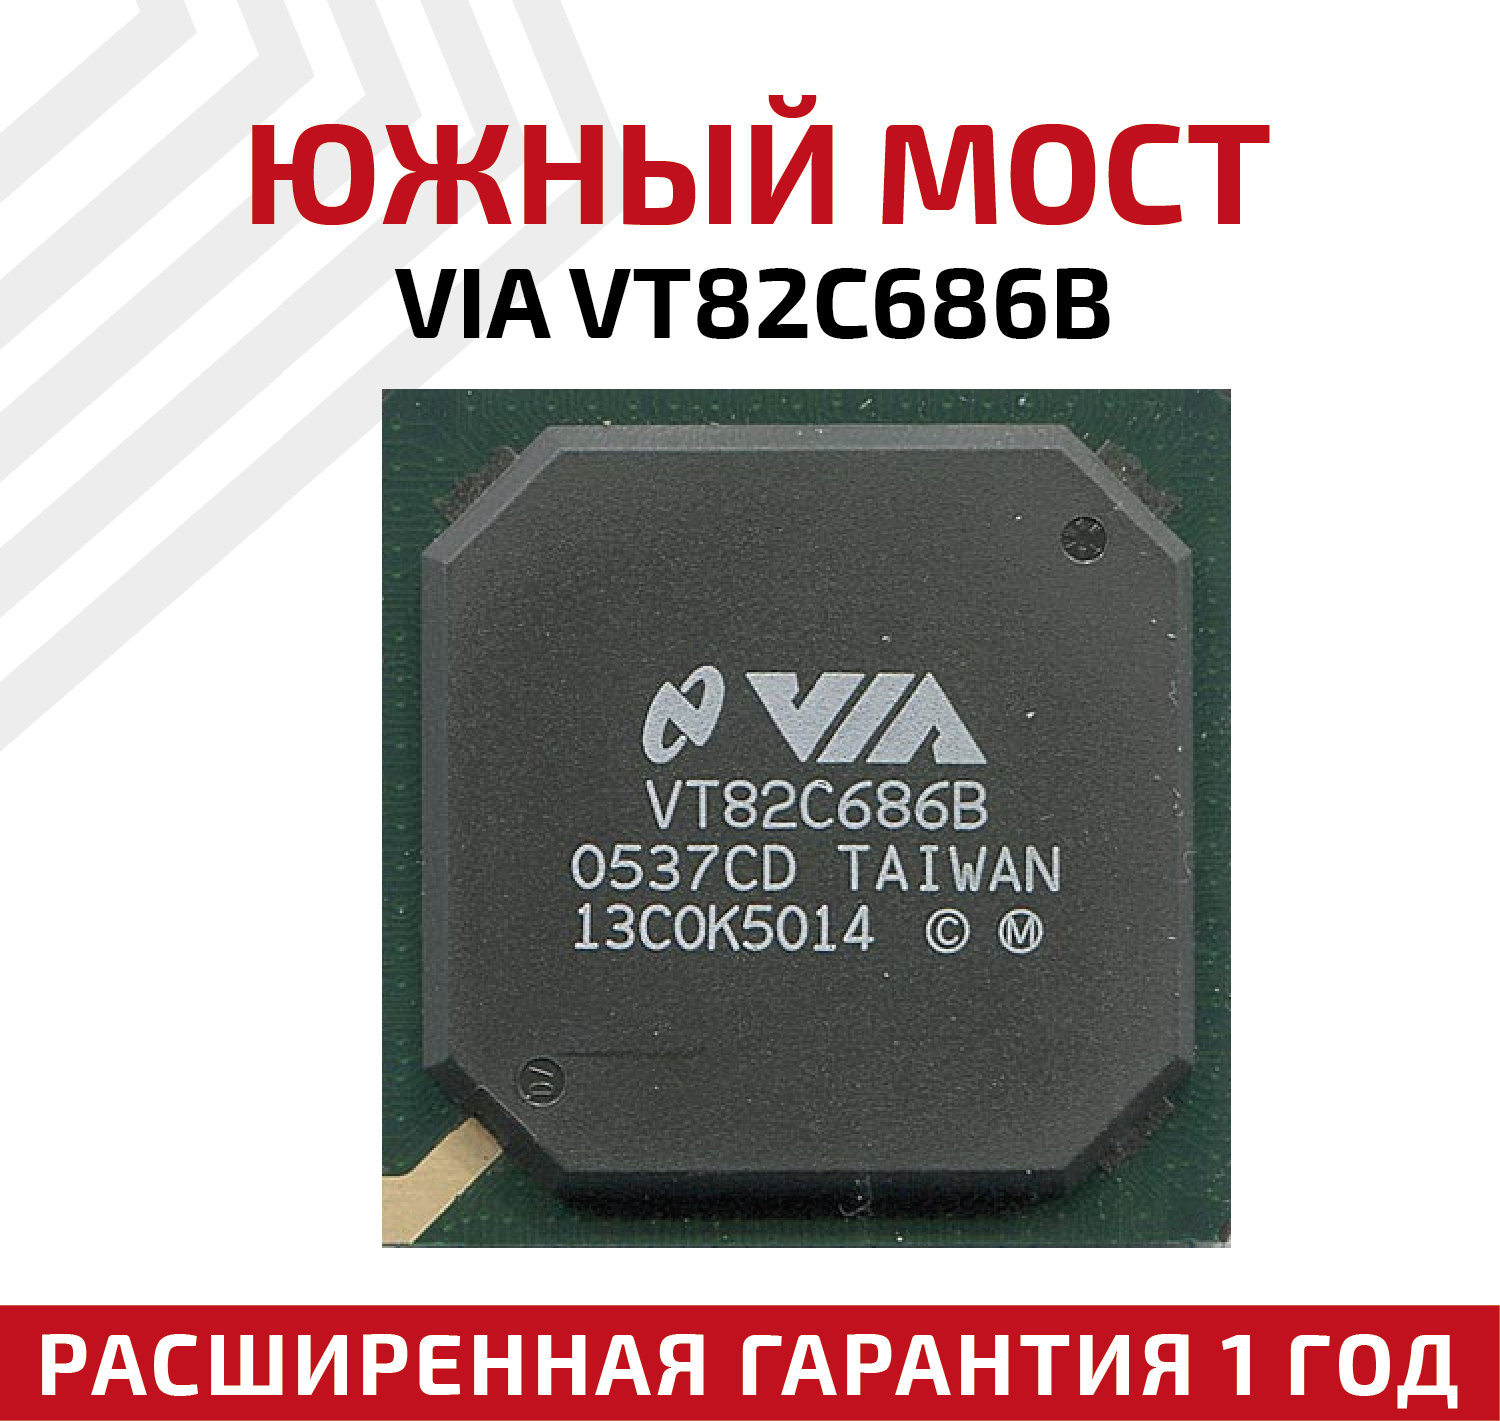 Аудио драйвер VIA VT82C686B